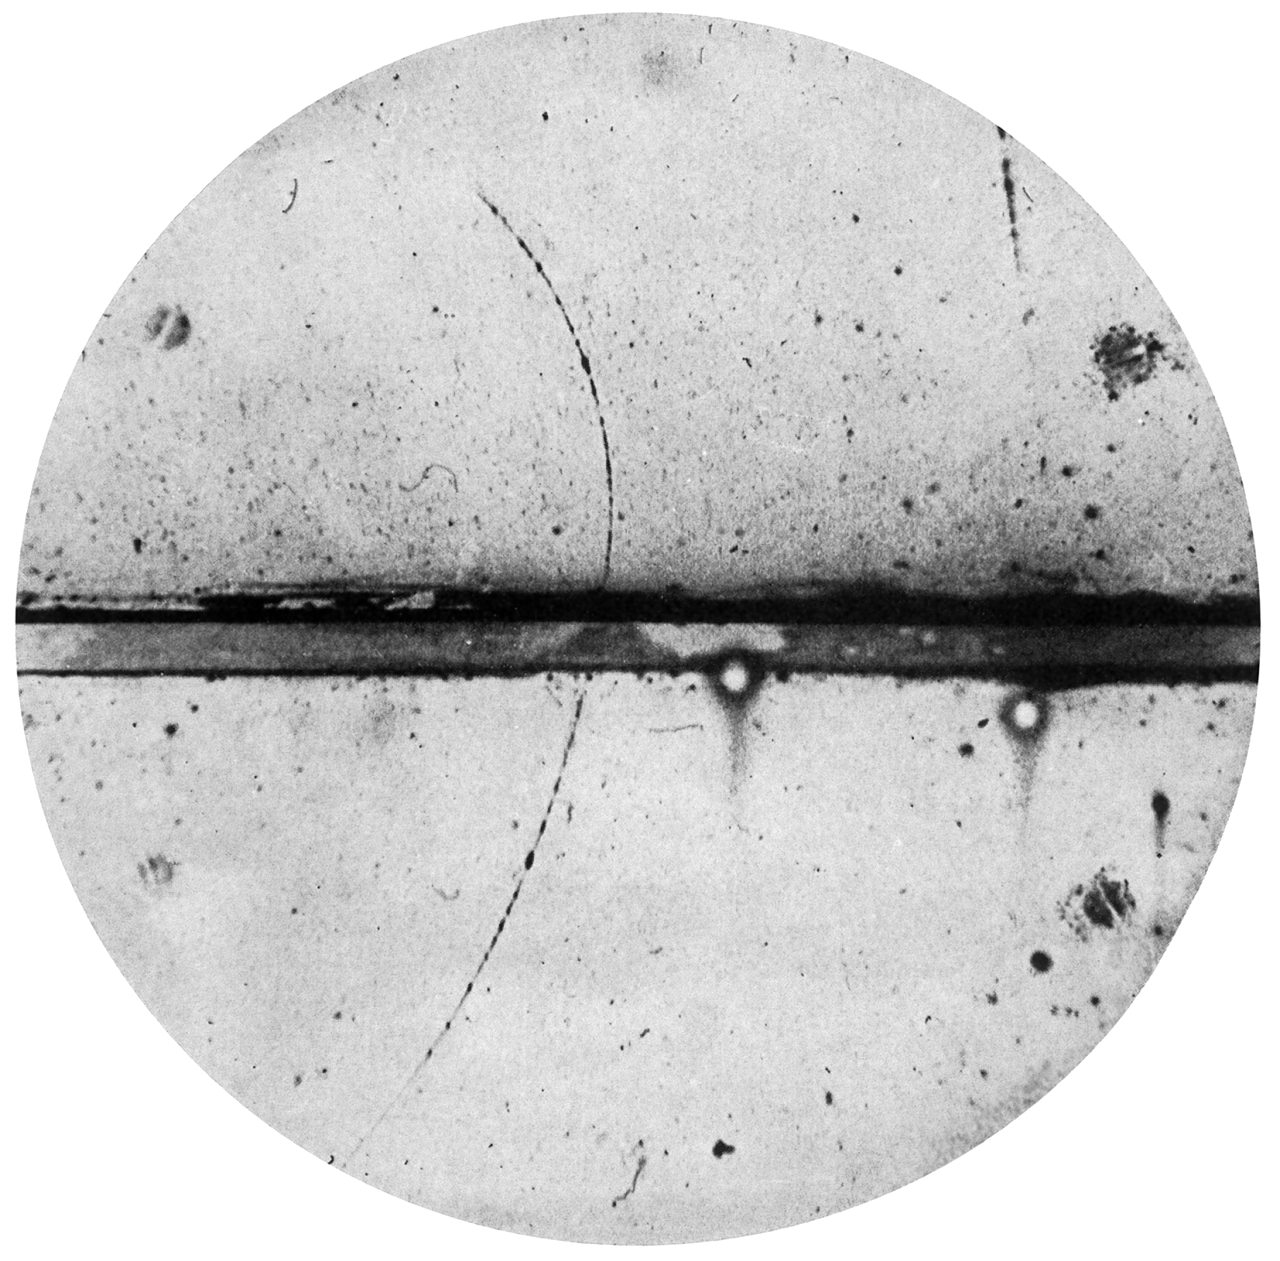 الصورة : 1932 - كارل ديفد أندرسون يكتشف البوزيترون (الجسيم المضاد للإلكترون).